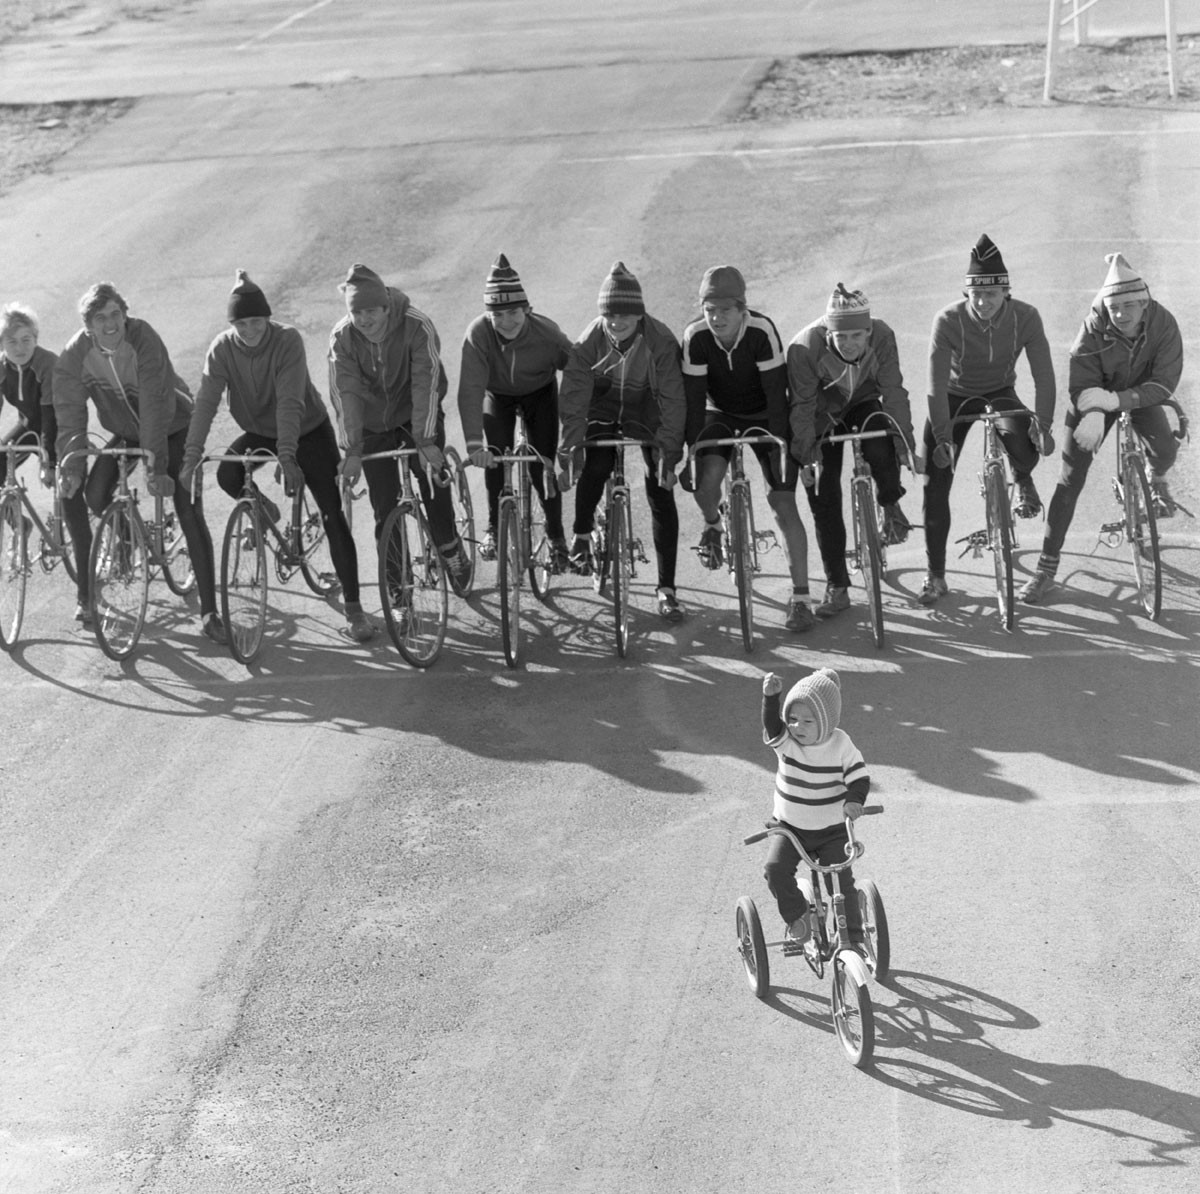 1986. Estudiantes en la ciudad de Jambil (ahora Taraz, Kazajistán) en la línea de salida antes de una competición ciclista.